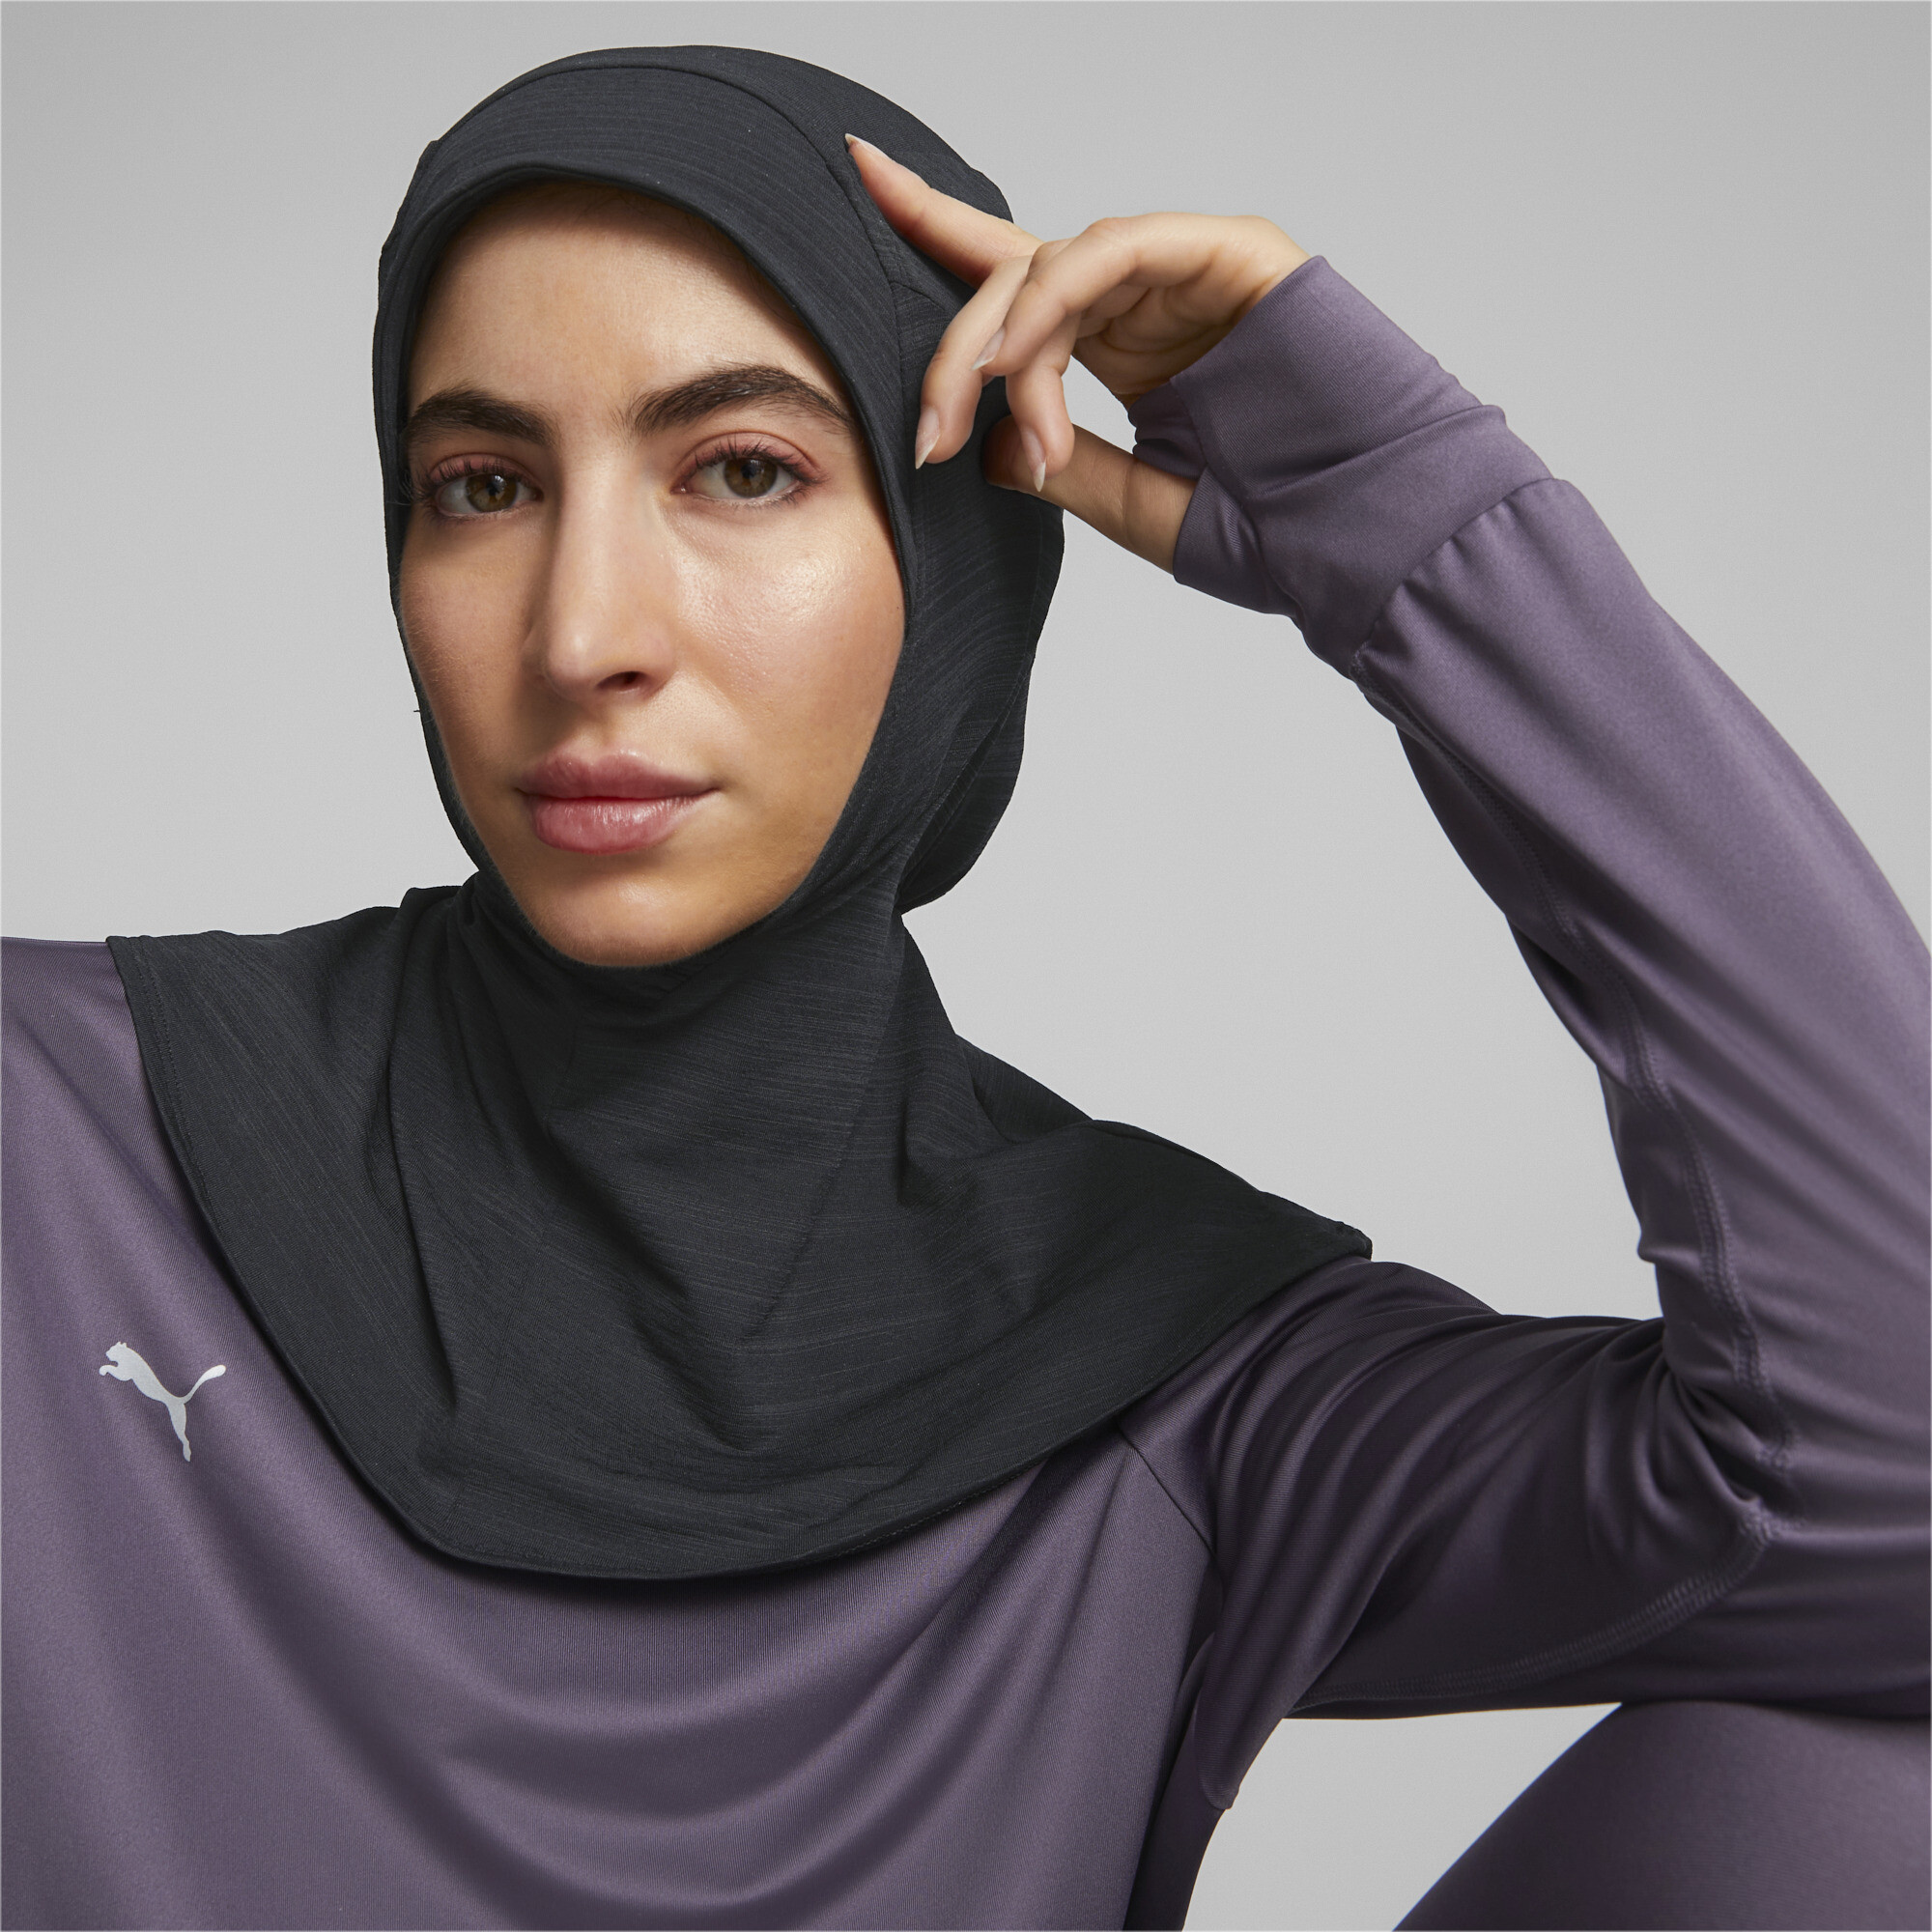 Women's PUMA Sports Running Hijab In 10 - Black, Size Small